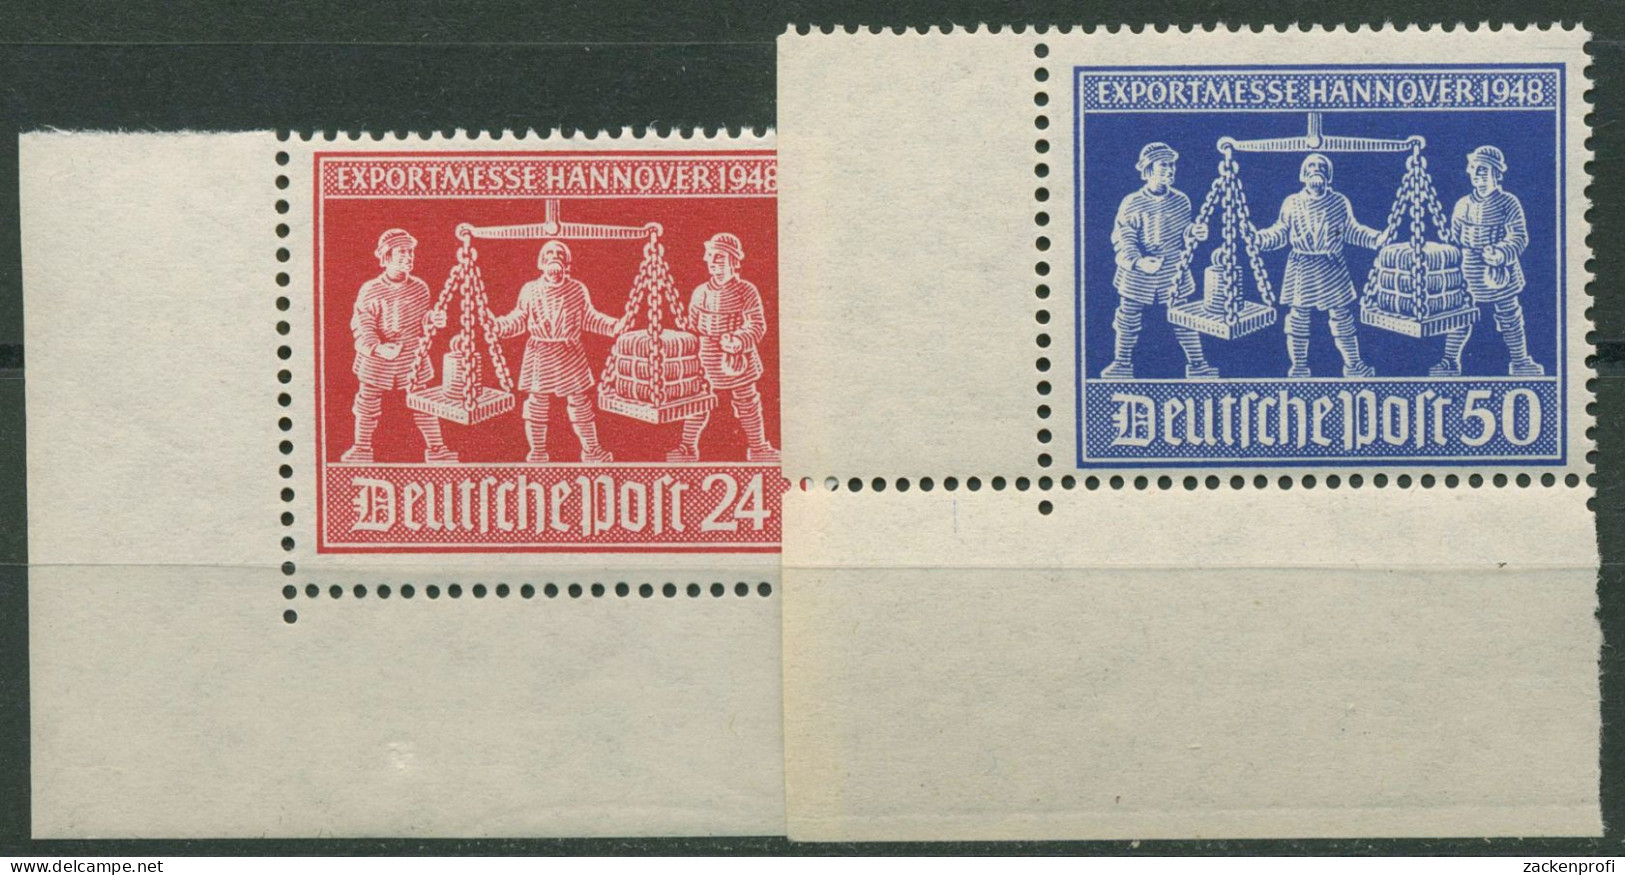 Alliierte Besetzung 1948 Exportmesse Hannover 969/70 Ecke 3 Postfrisch - Postfris